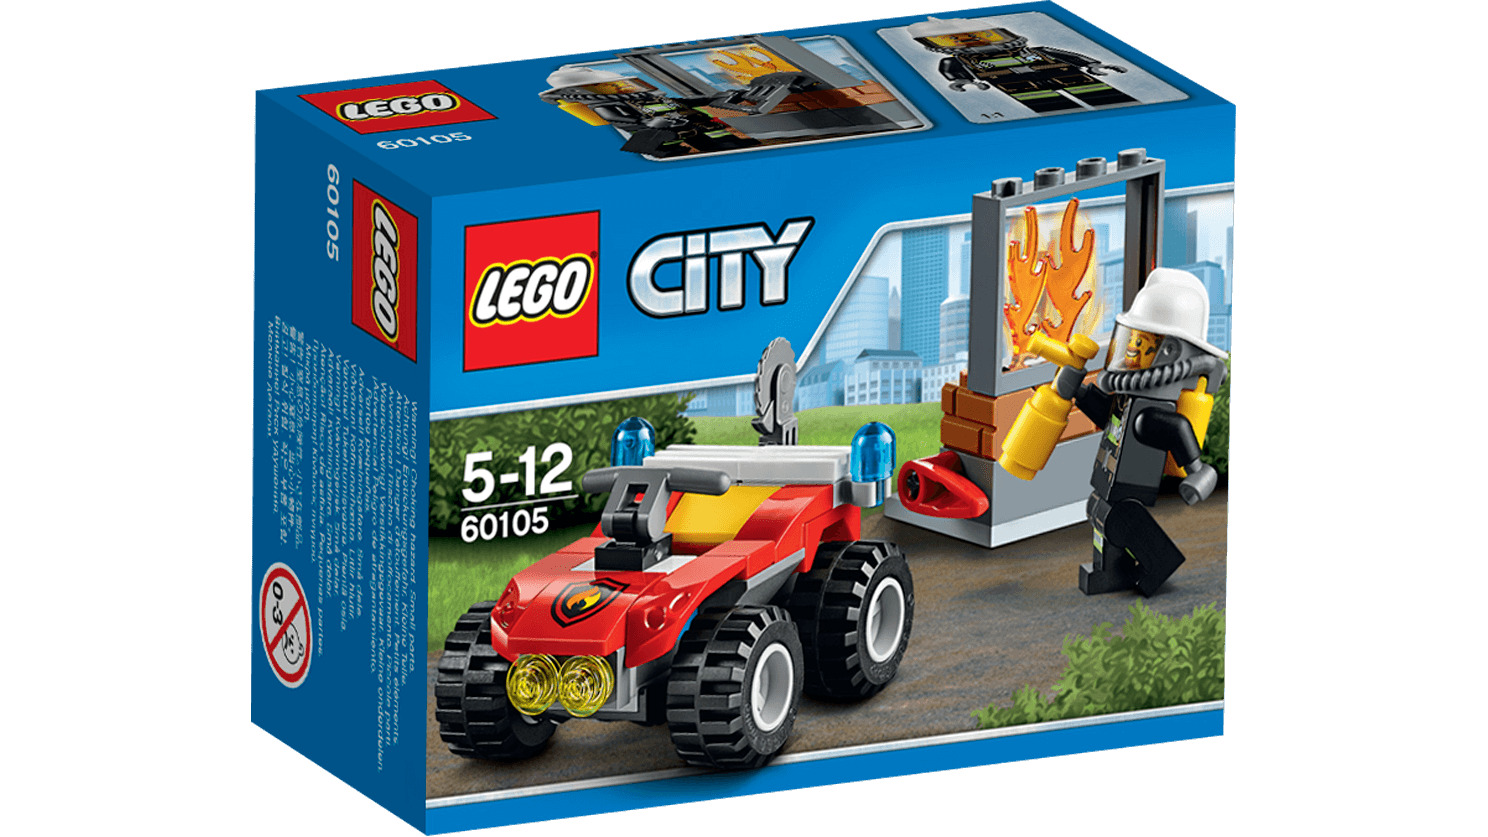 Đồ chơi xếp hình Lego City 60105 - Xe cứu hỏa cơ động